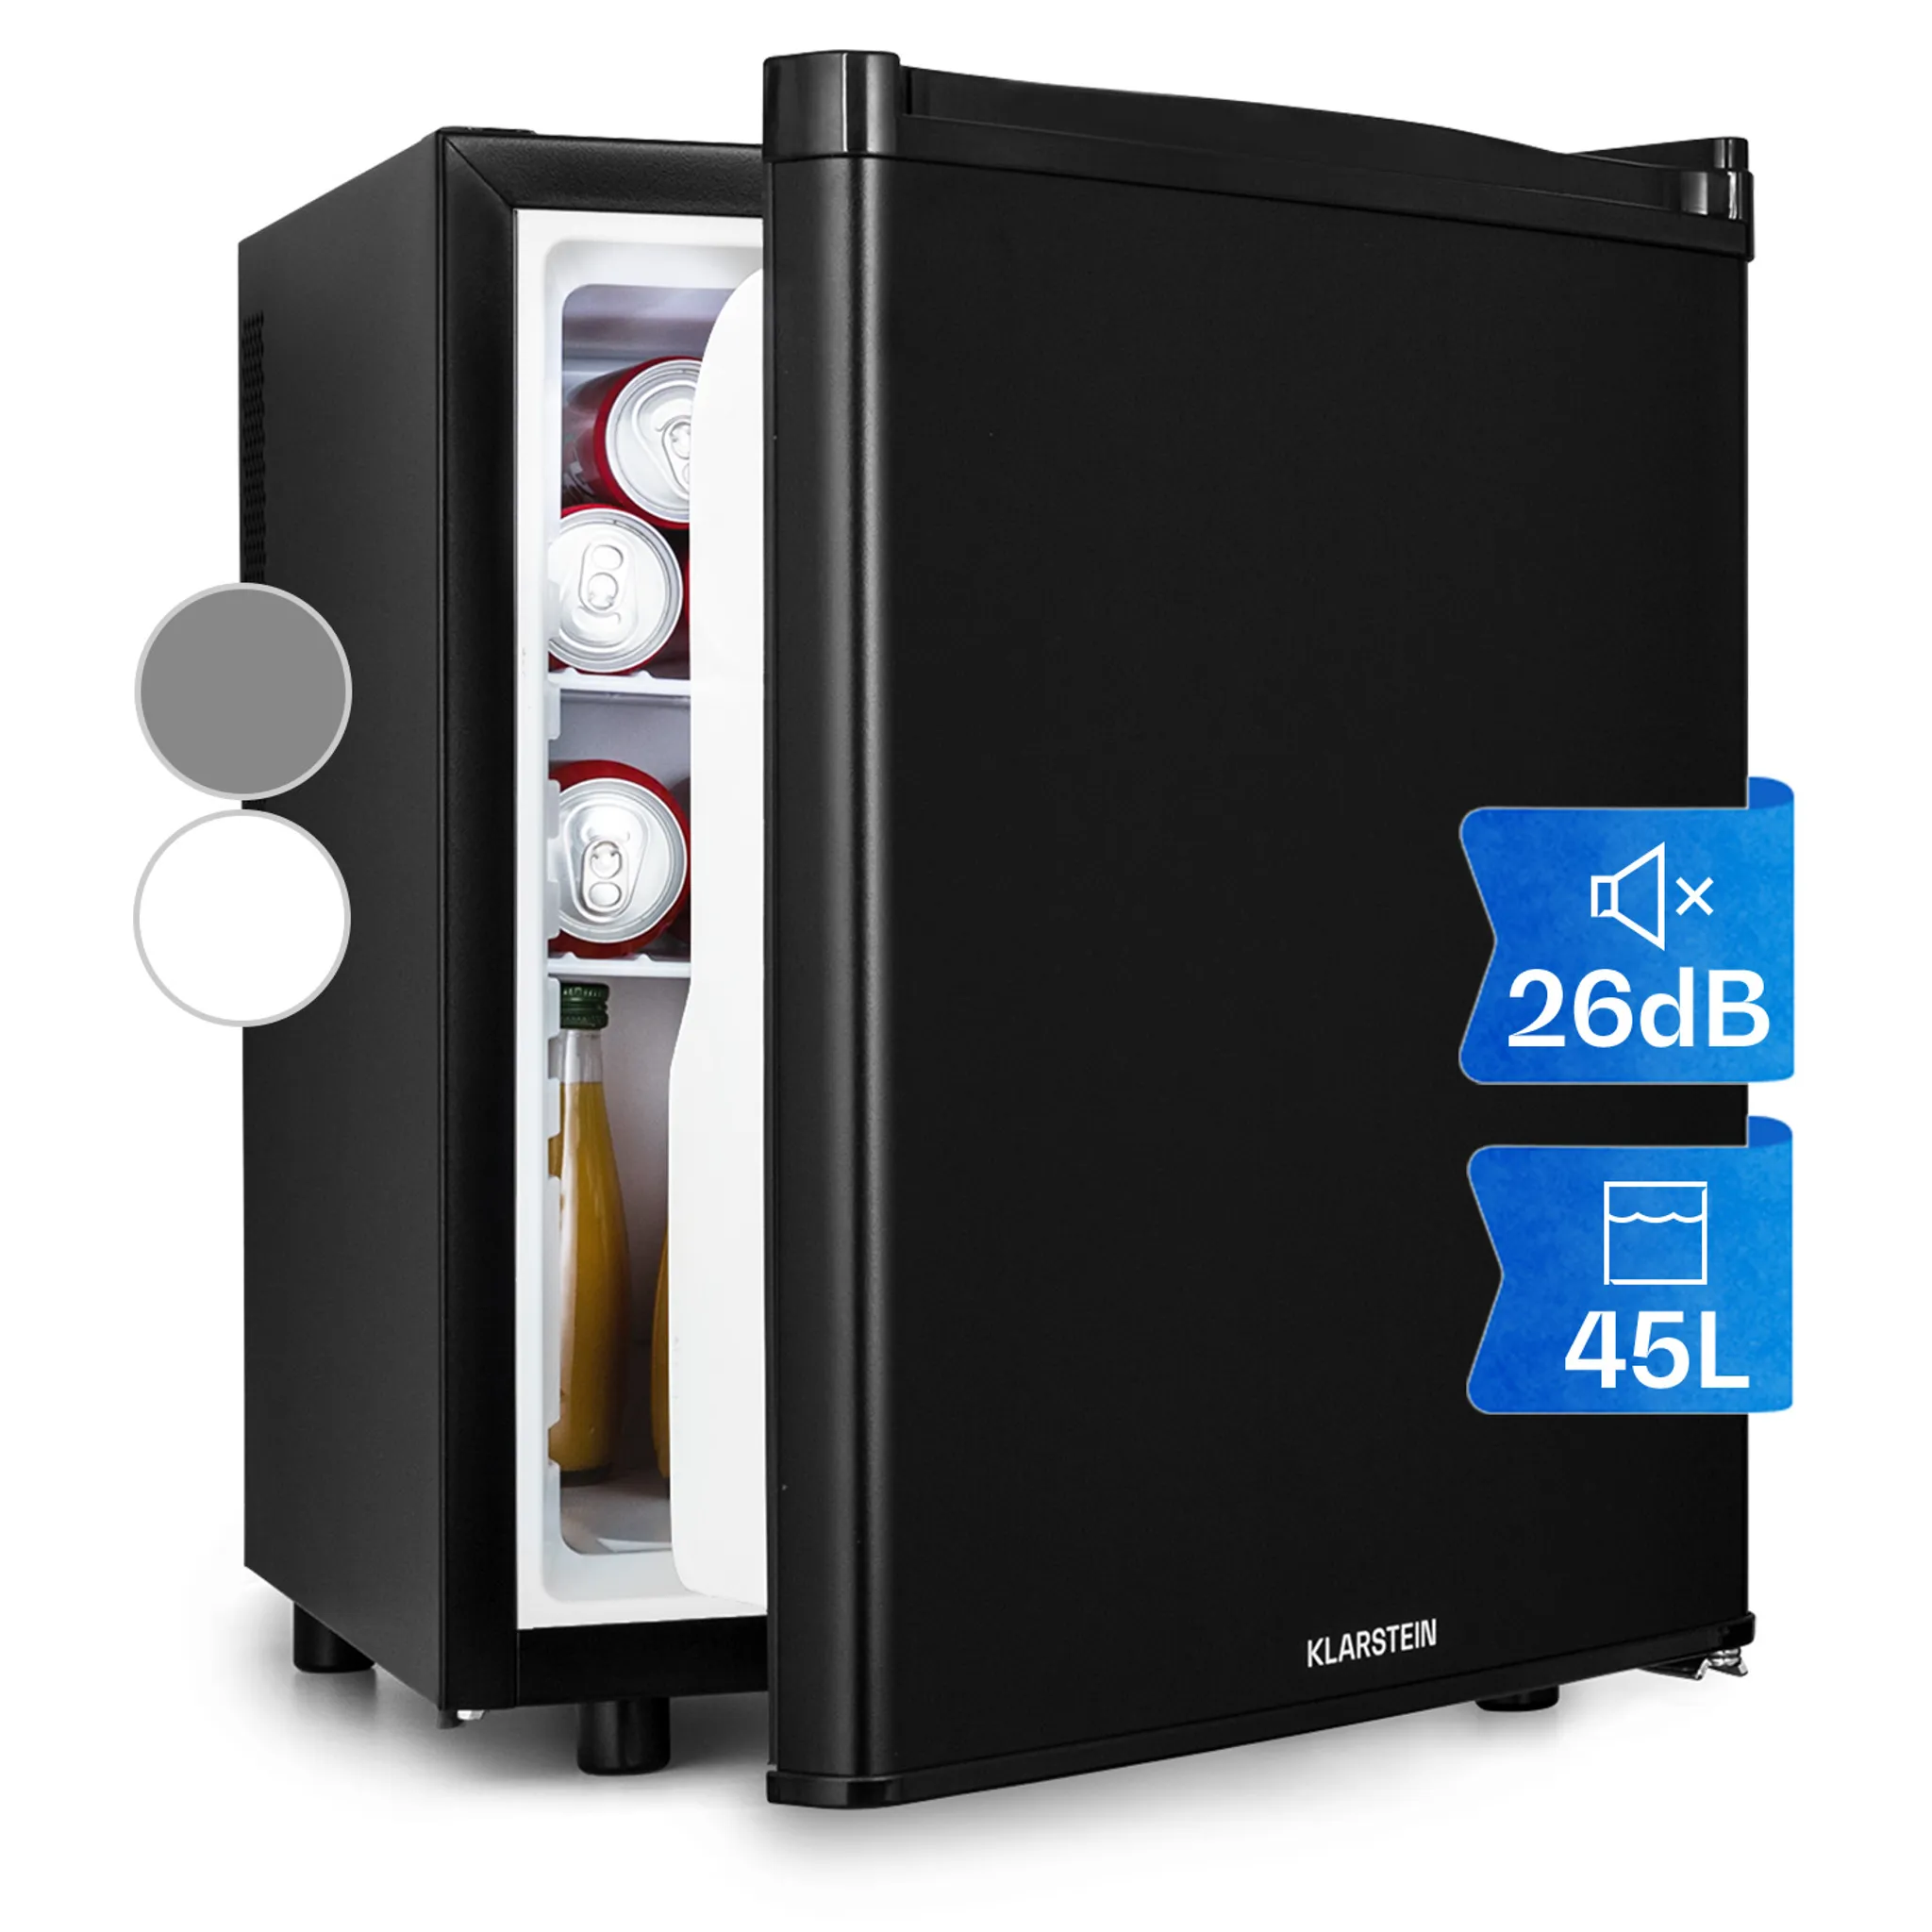 Klarstein Mini Kühlschrank, Retro Mini-Kühlschrank mit Gefrierfach, 67  Liter Getränkekühlschrank Klein & Kompakt, Kleiner Kühlschrank mit